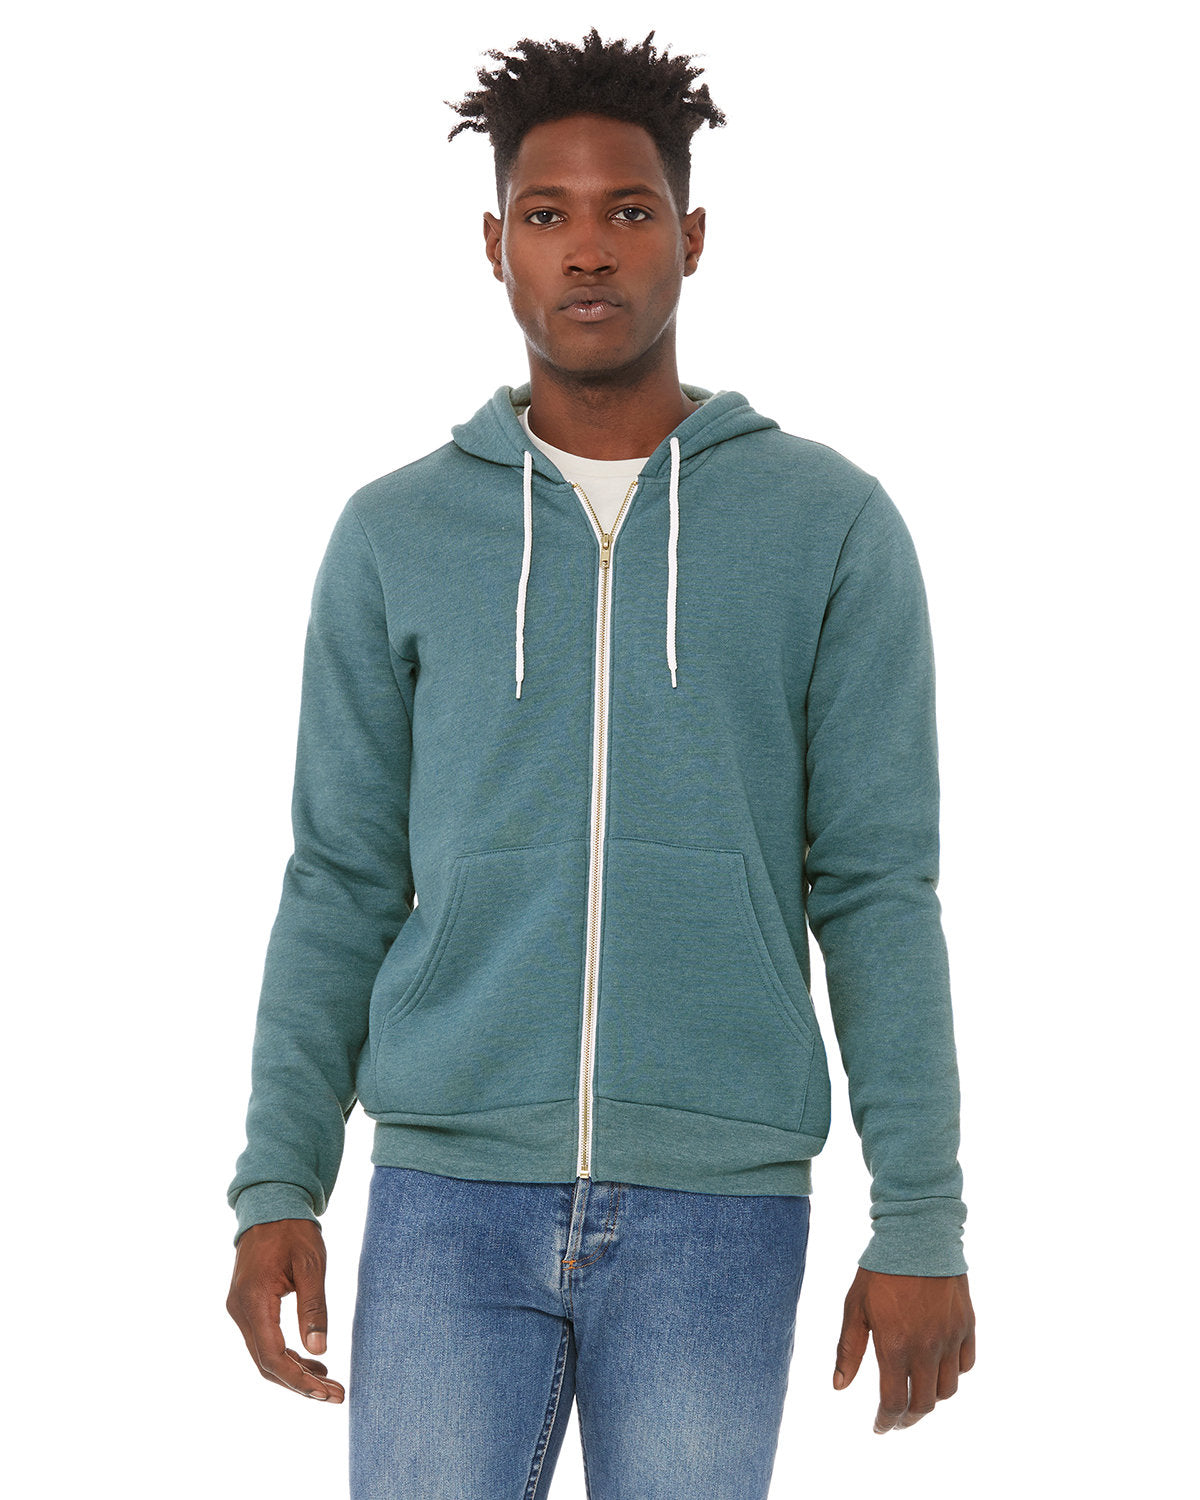 Bella + Canvas Unisex Versatile Warmth: Poly-Cotton Fleece Full-Zip Hooded Sweatshirt